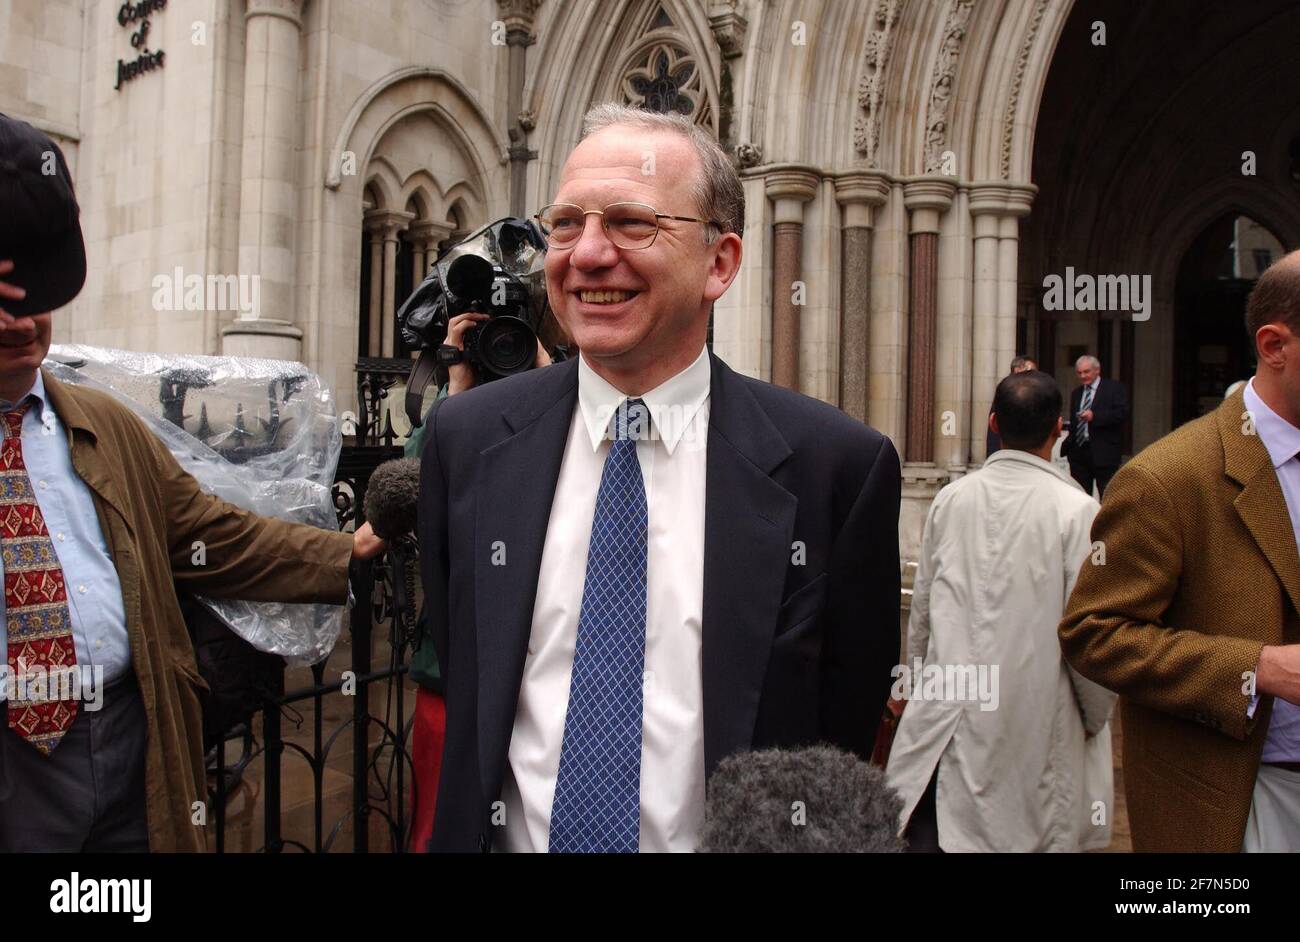 Représentant le maire Livingstone, Derek Turner de transport pour Londres quitte la High court à Londres aujourd'hui mercredi 31 juillet 2002 après avoir remporté l'affaire contre le Conseil de Westminster sur les accusations de congestion dans le centre de Londres.31 juillet 2002 photo Andy Paradise Banque D'Images